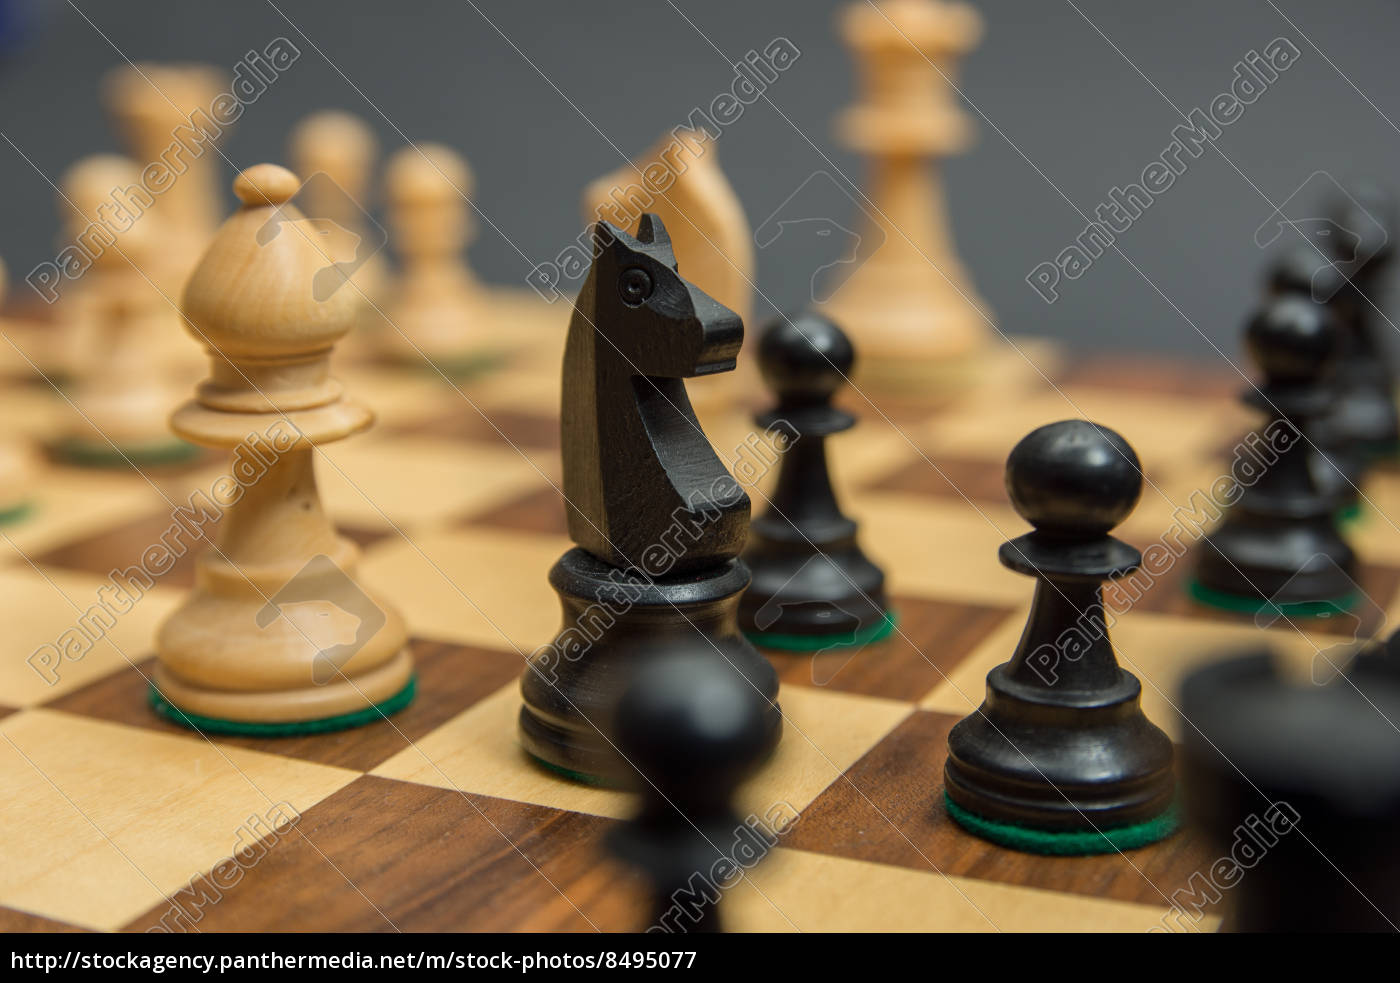 Jogando no xadrez imagem de stock. Imagem de controle - 175240537